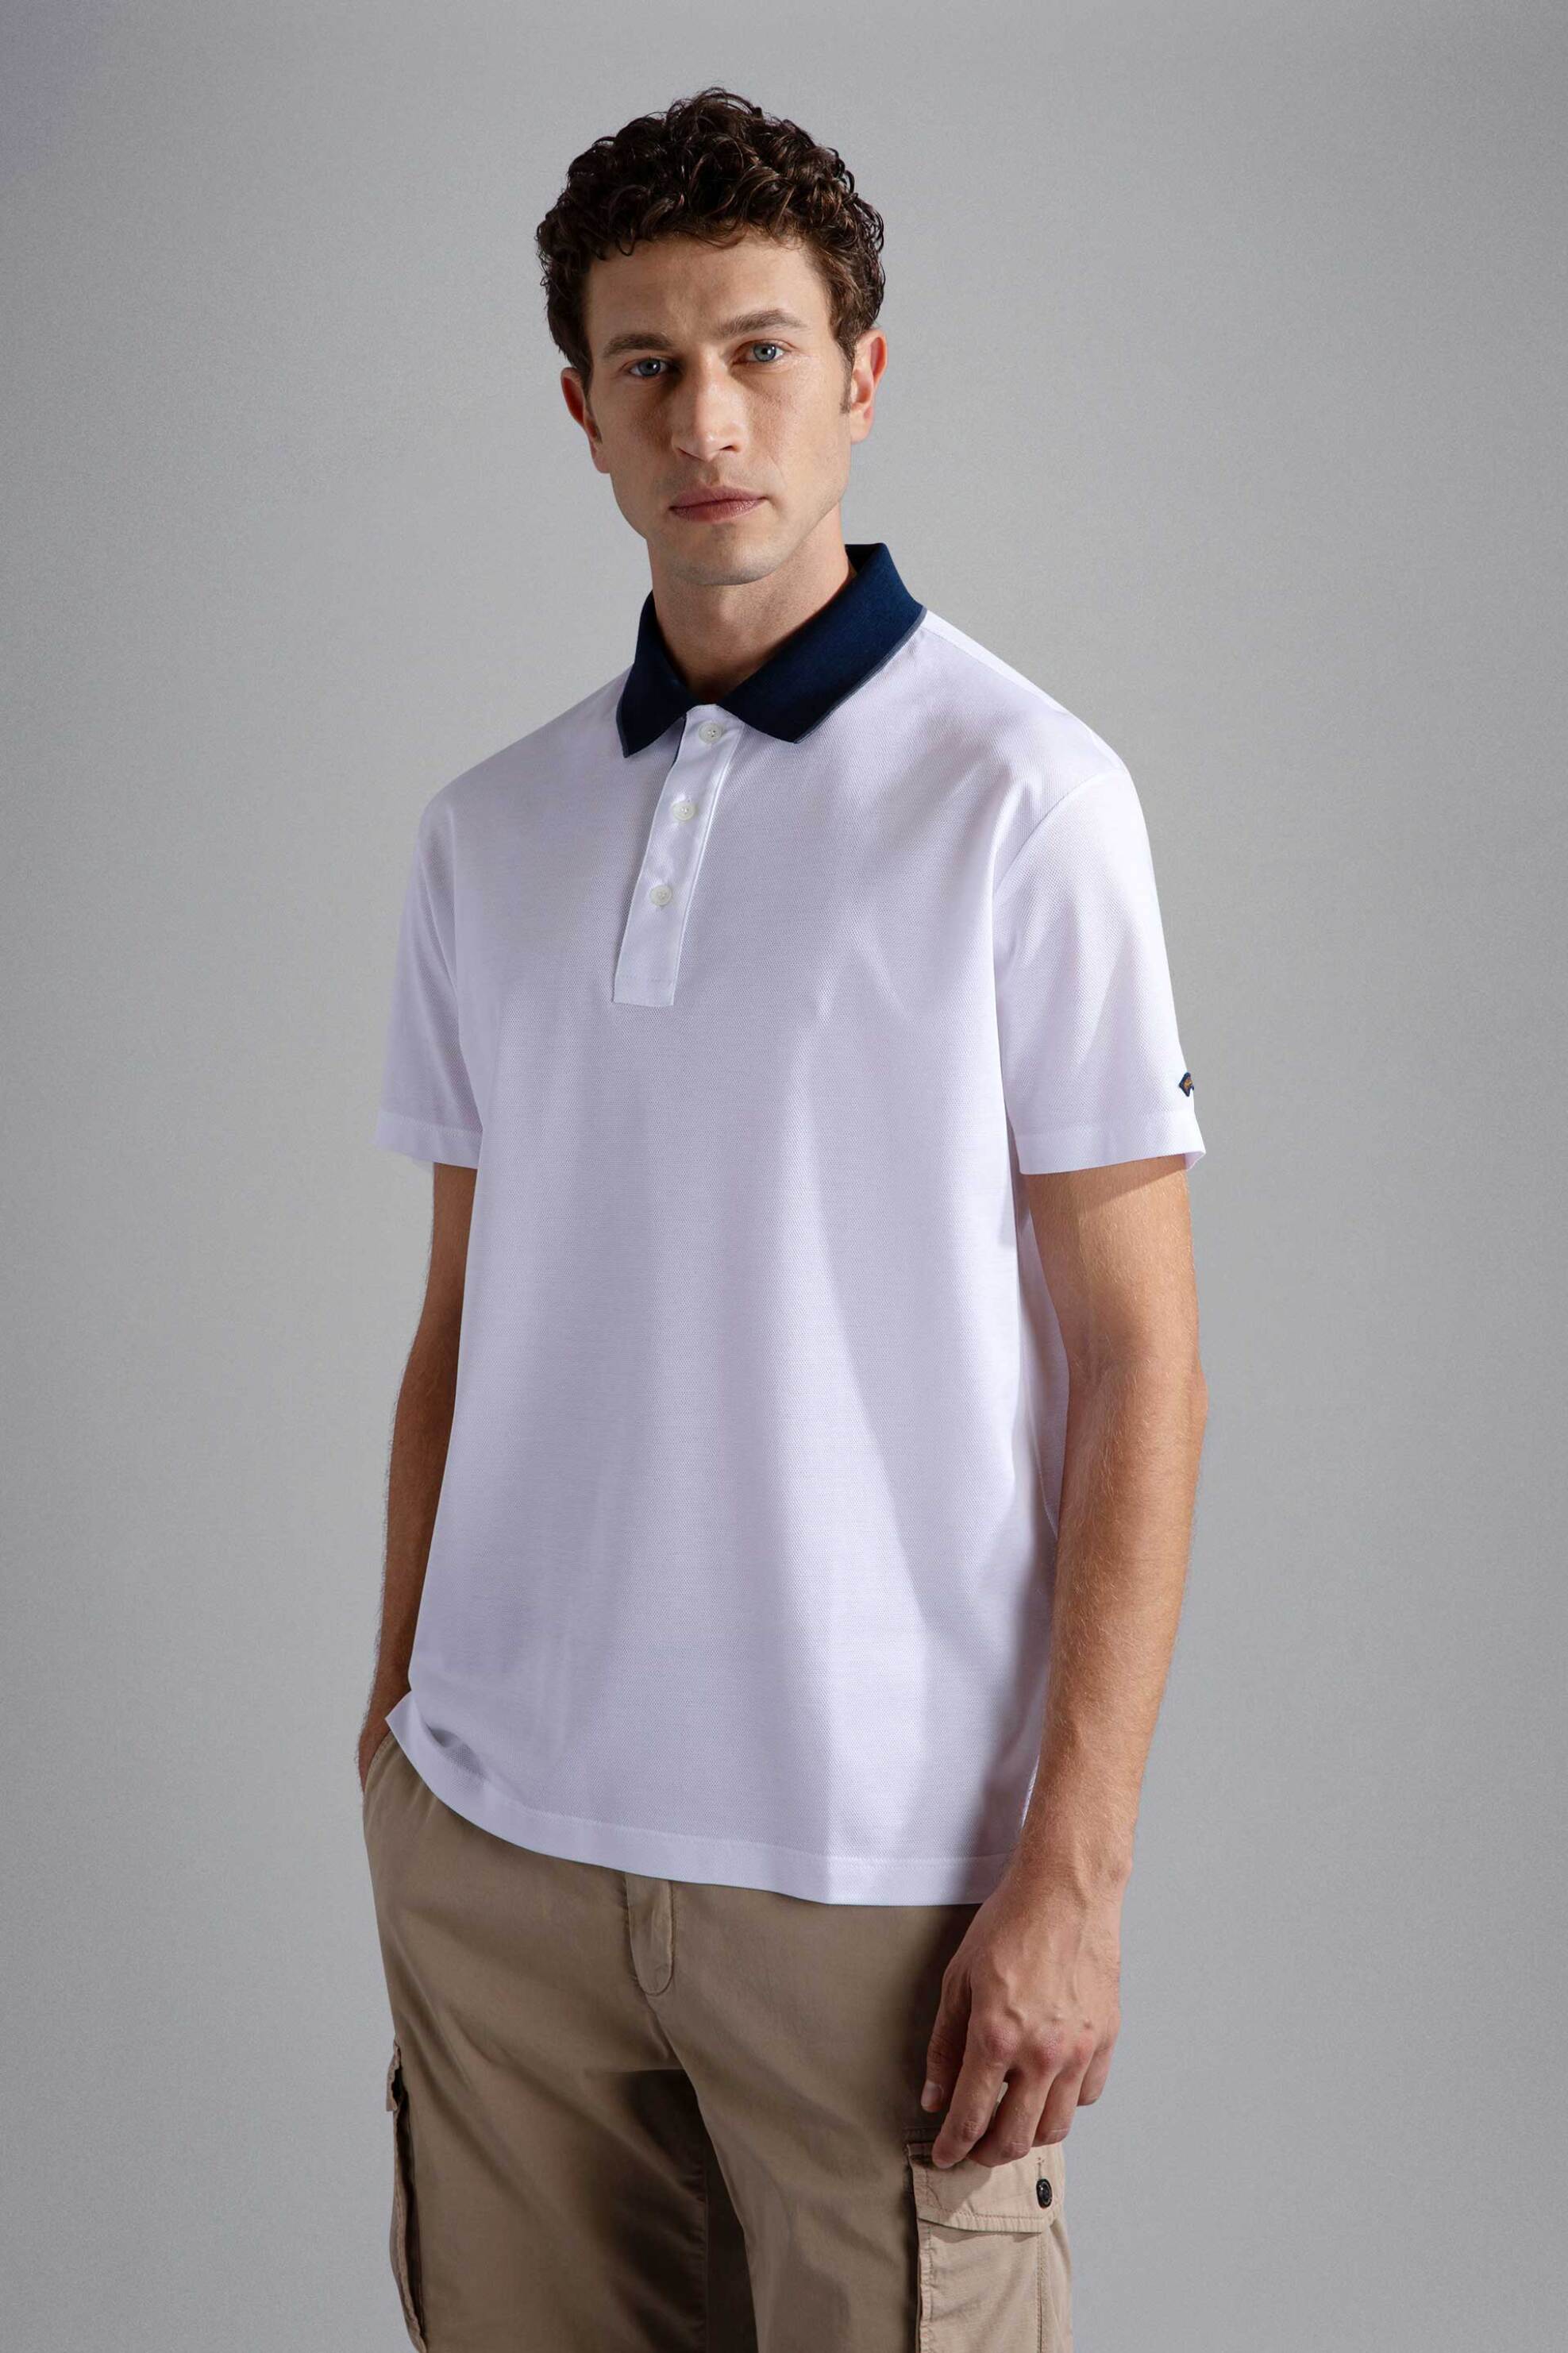 Ανδρική Μόδα > Ανδρικά Ρούχα > Ανδρικές Μπλούζες > Ανδρικές Μπλούζες Πολο Paul&Shark ανδρική μπλούζα πόλο μονόχρωμη με γιακά σε διαφορετικό χρώμα - 24411261 Λευκό